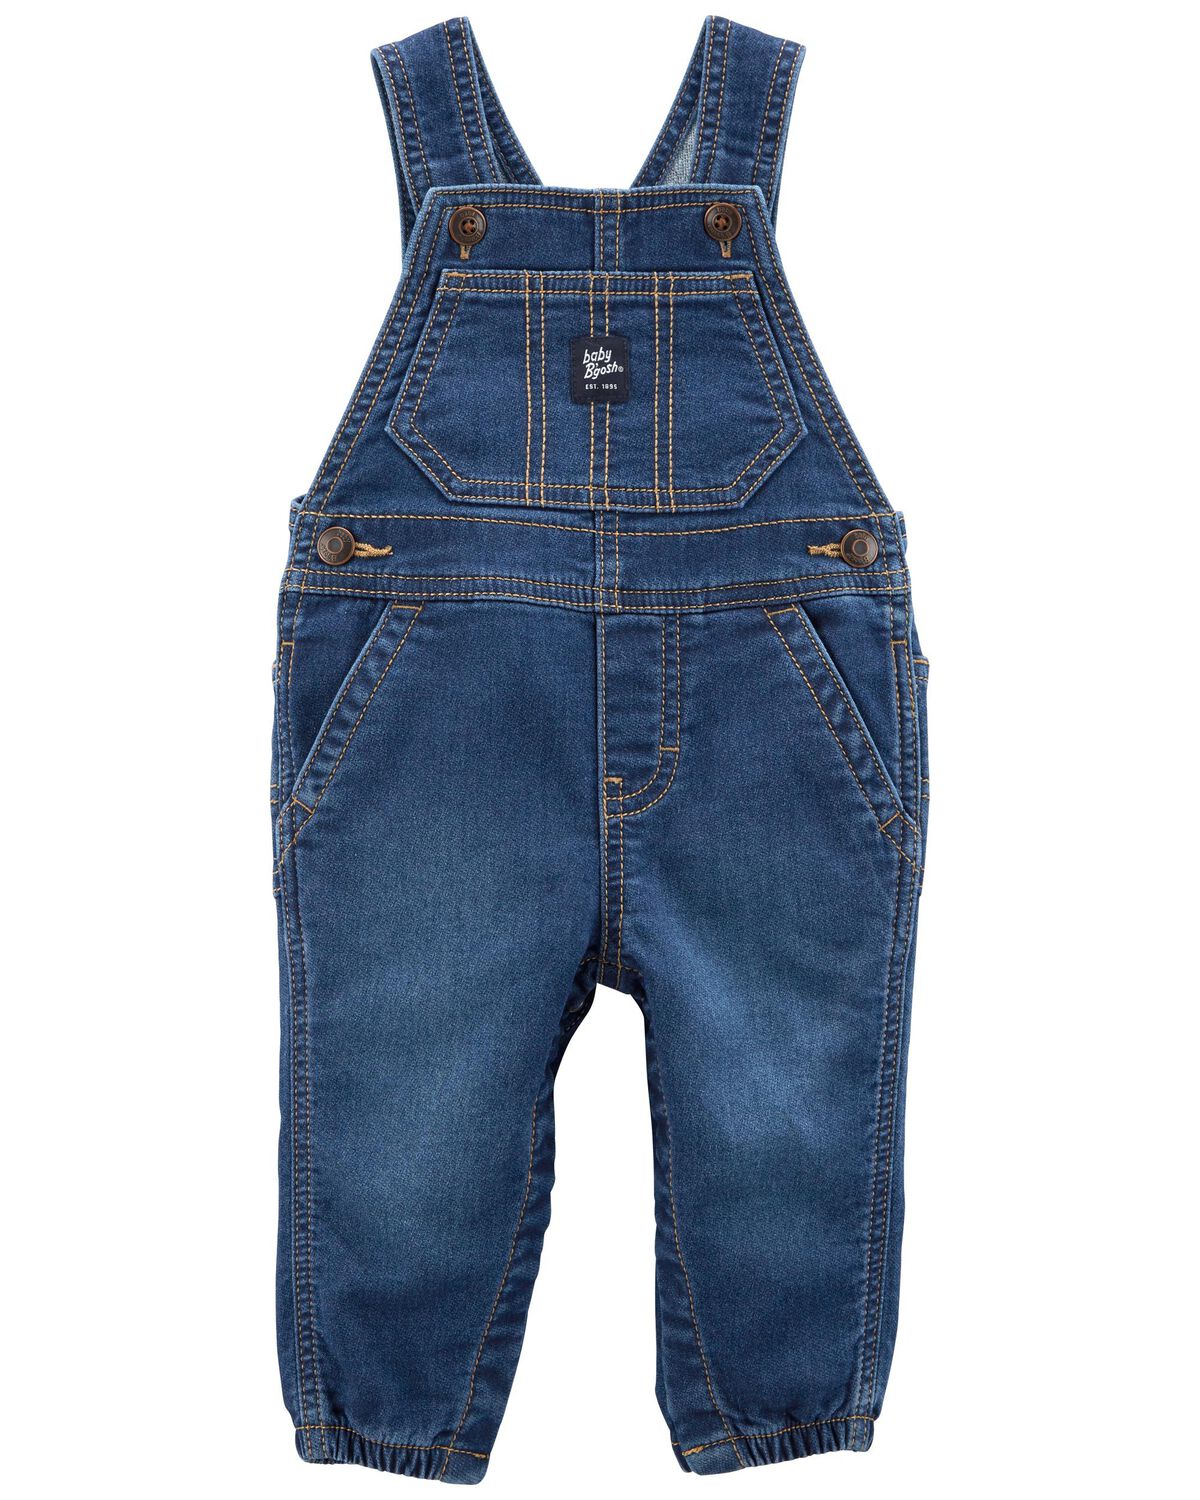 Indigo Baby Knit-Like Denim Overalls | carters.com